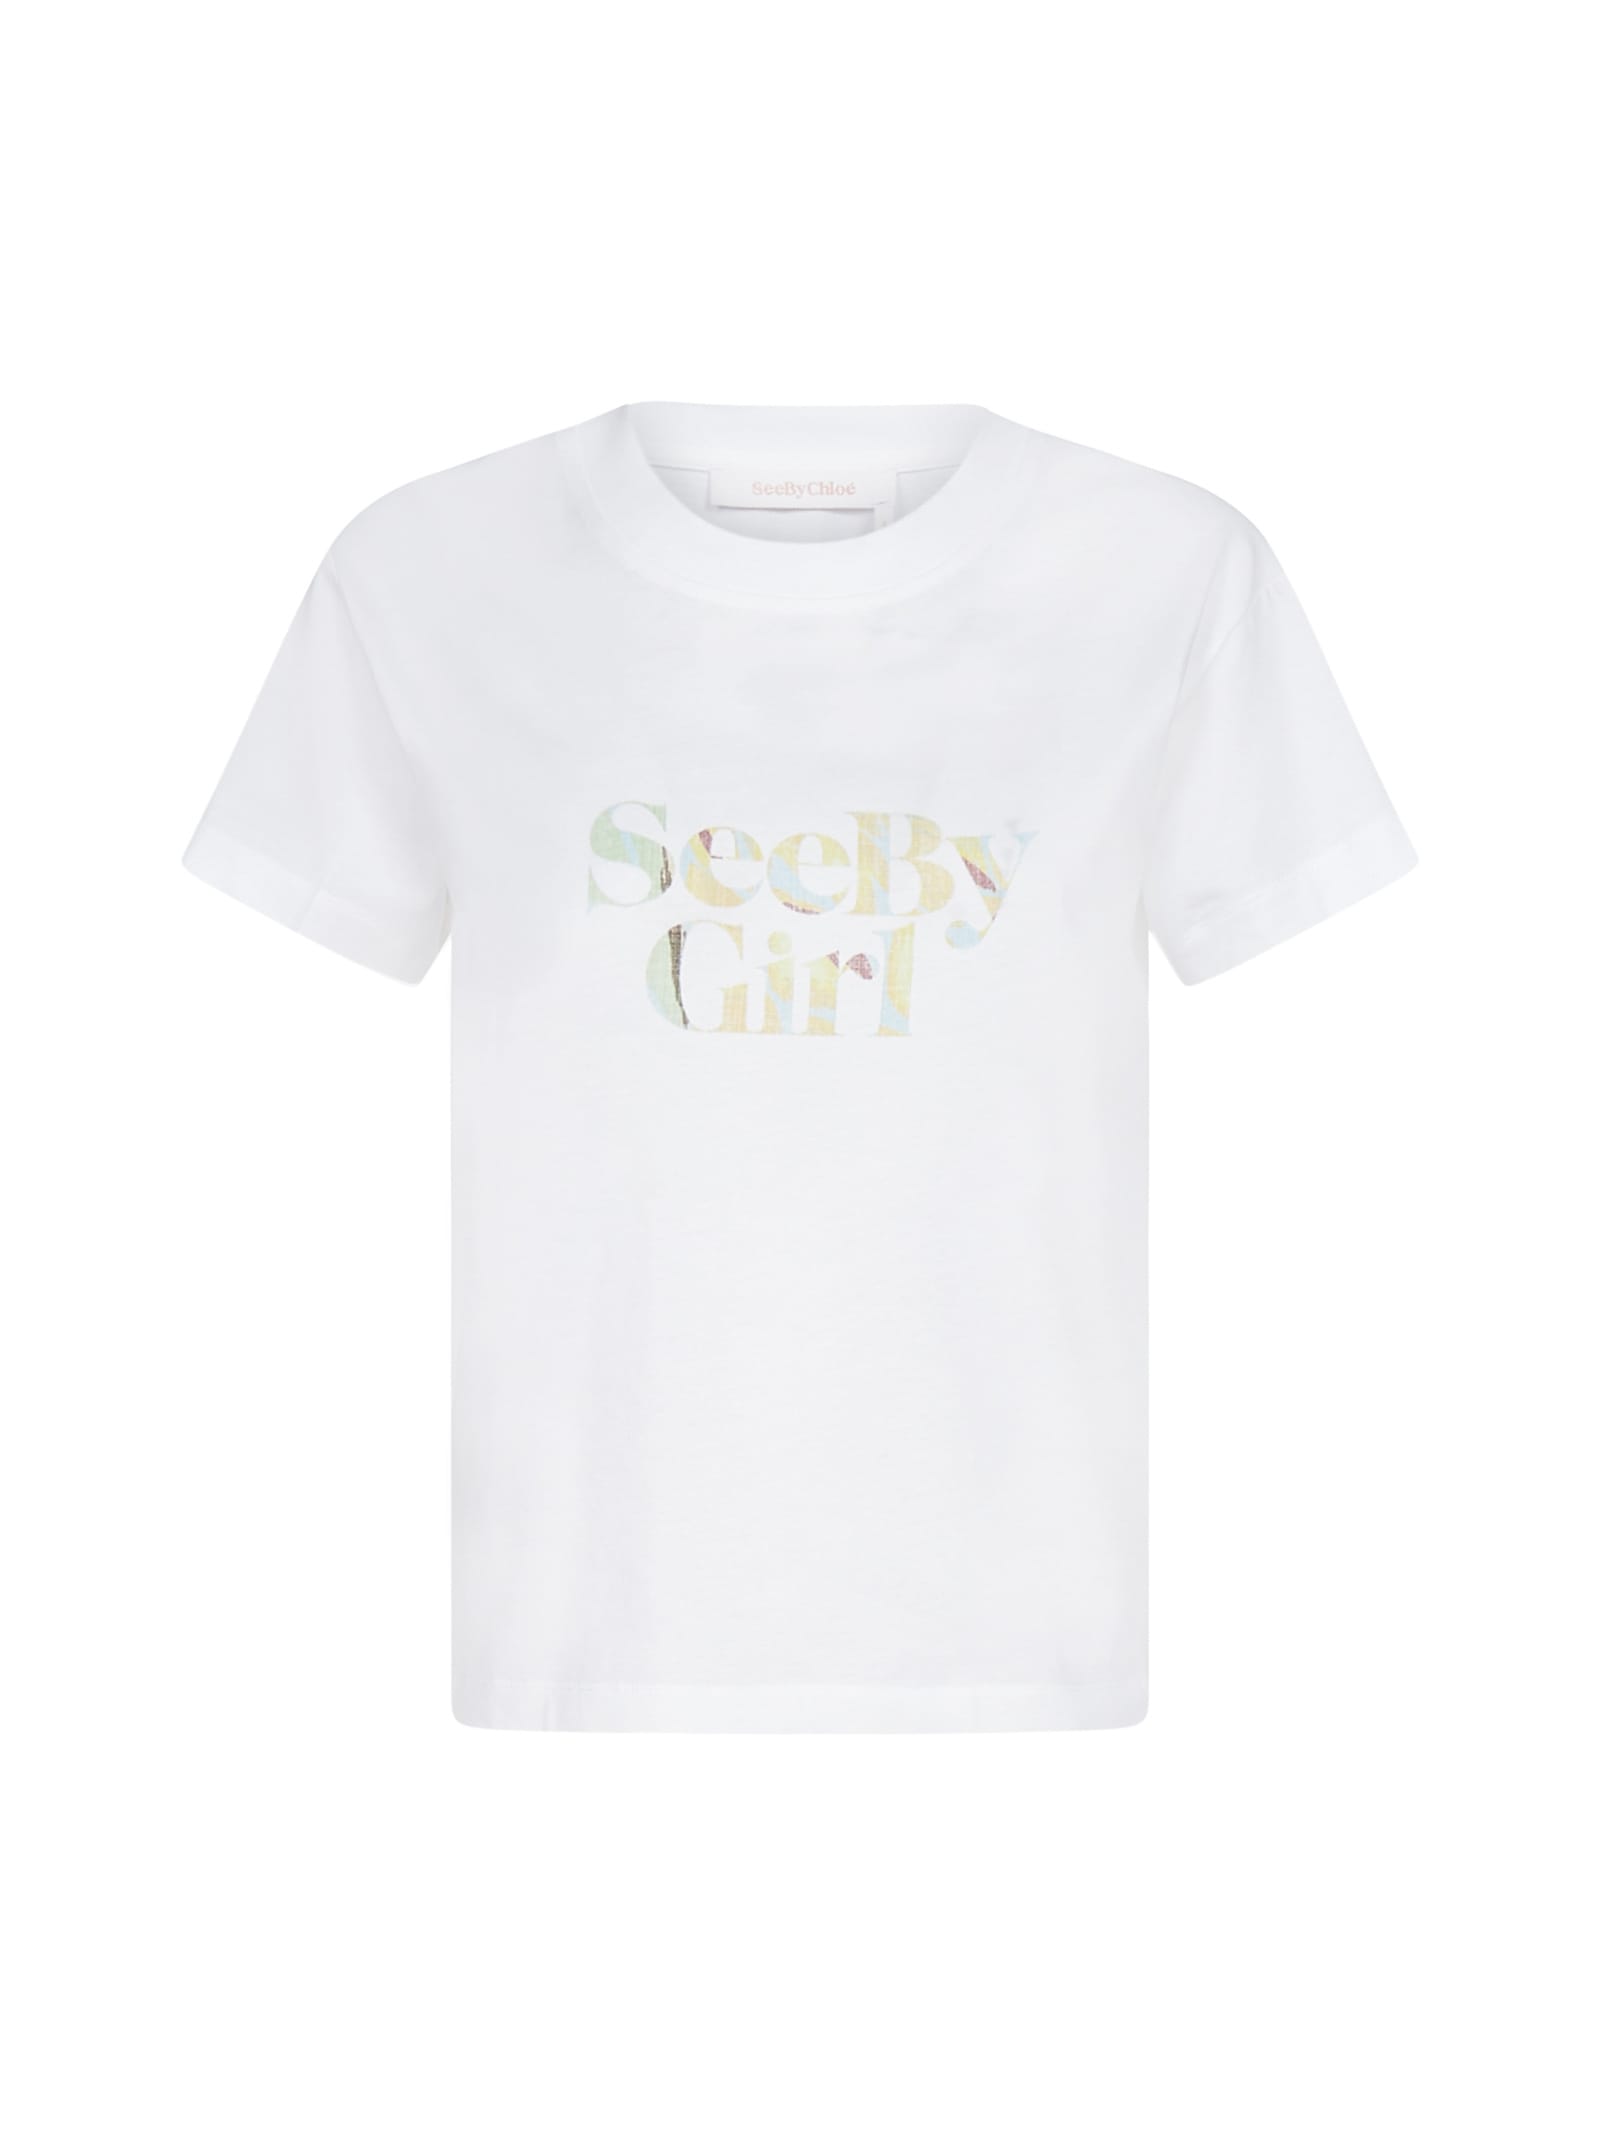 See by Chloé Logo Cotton T-shirt